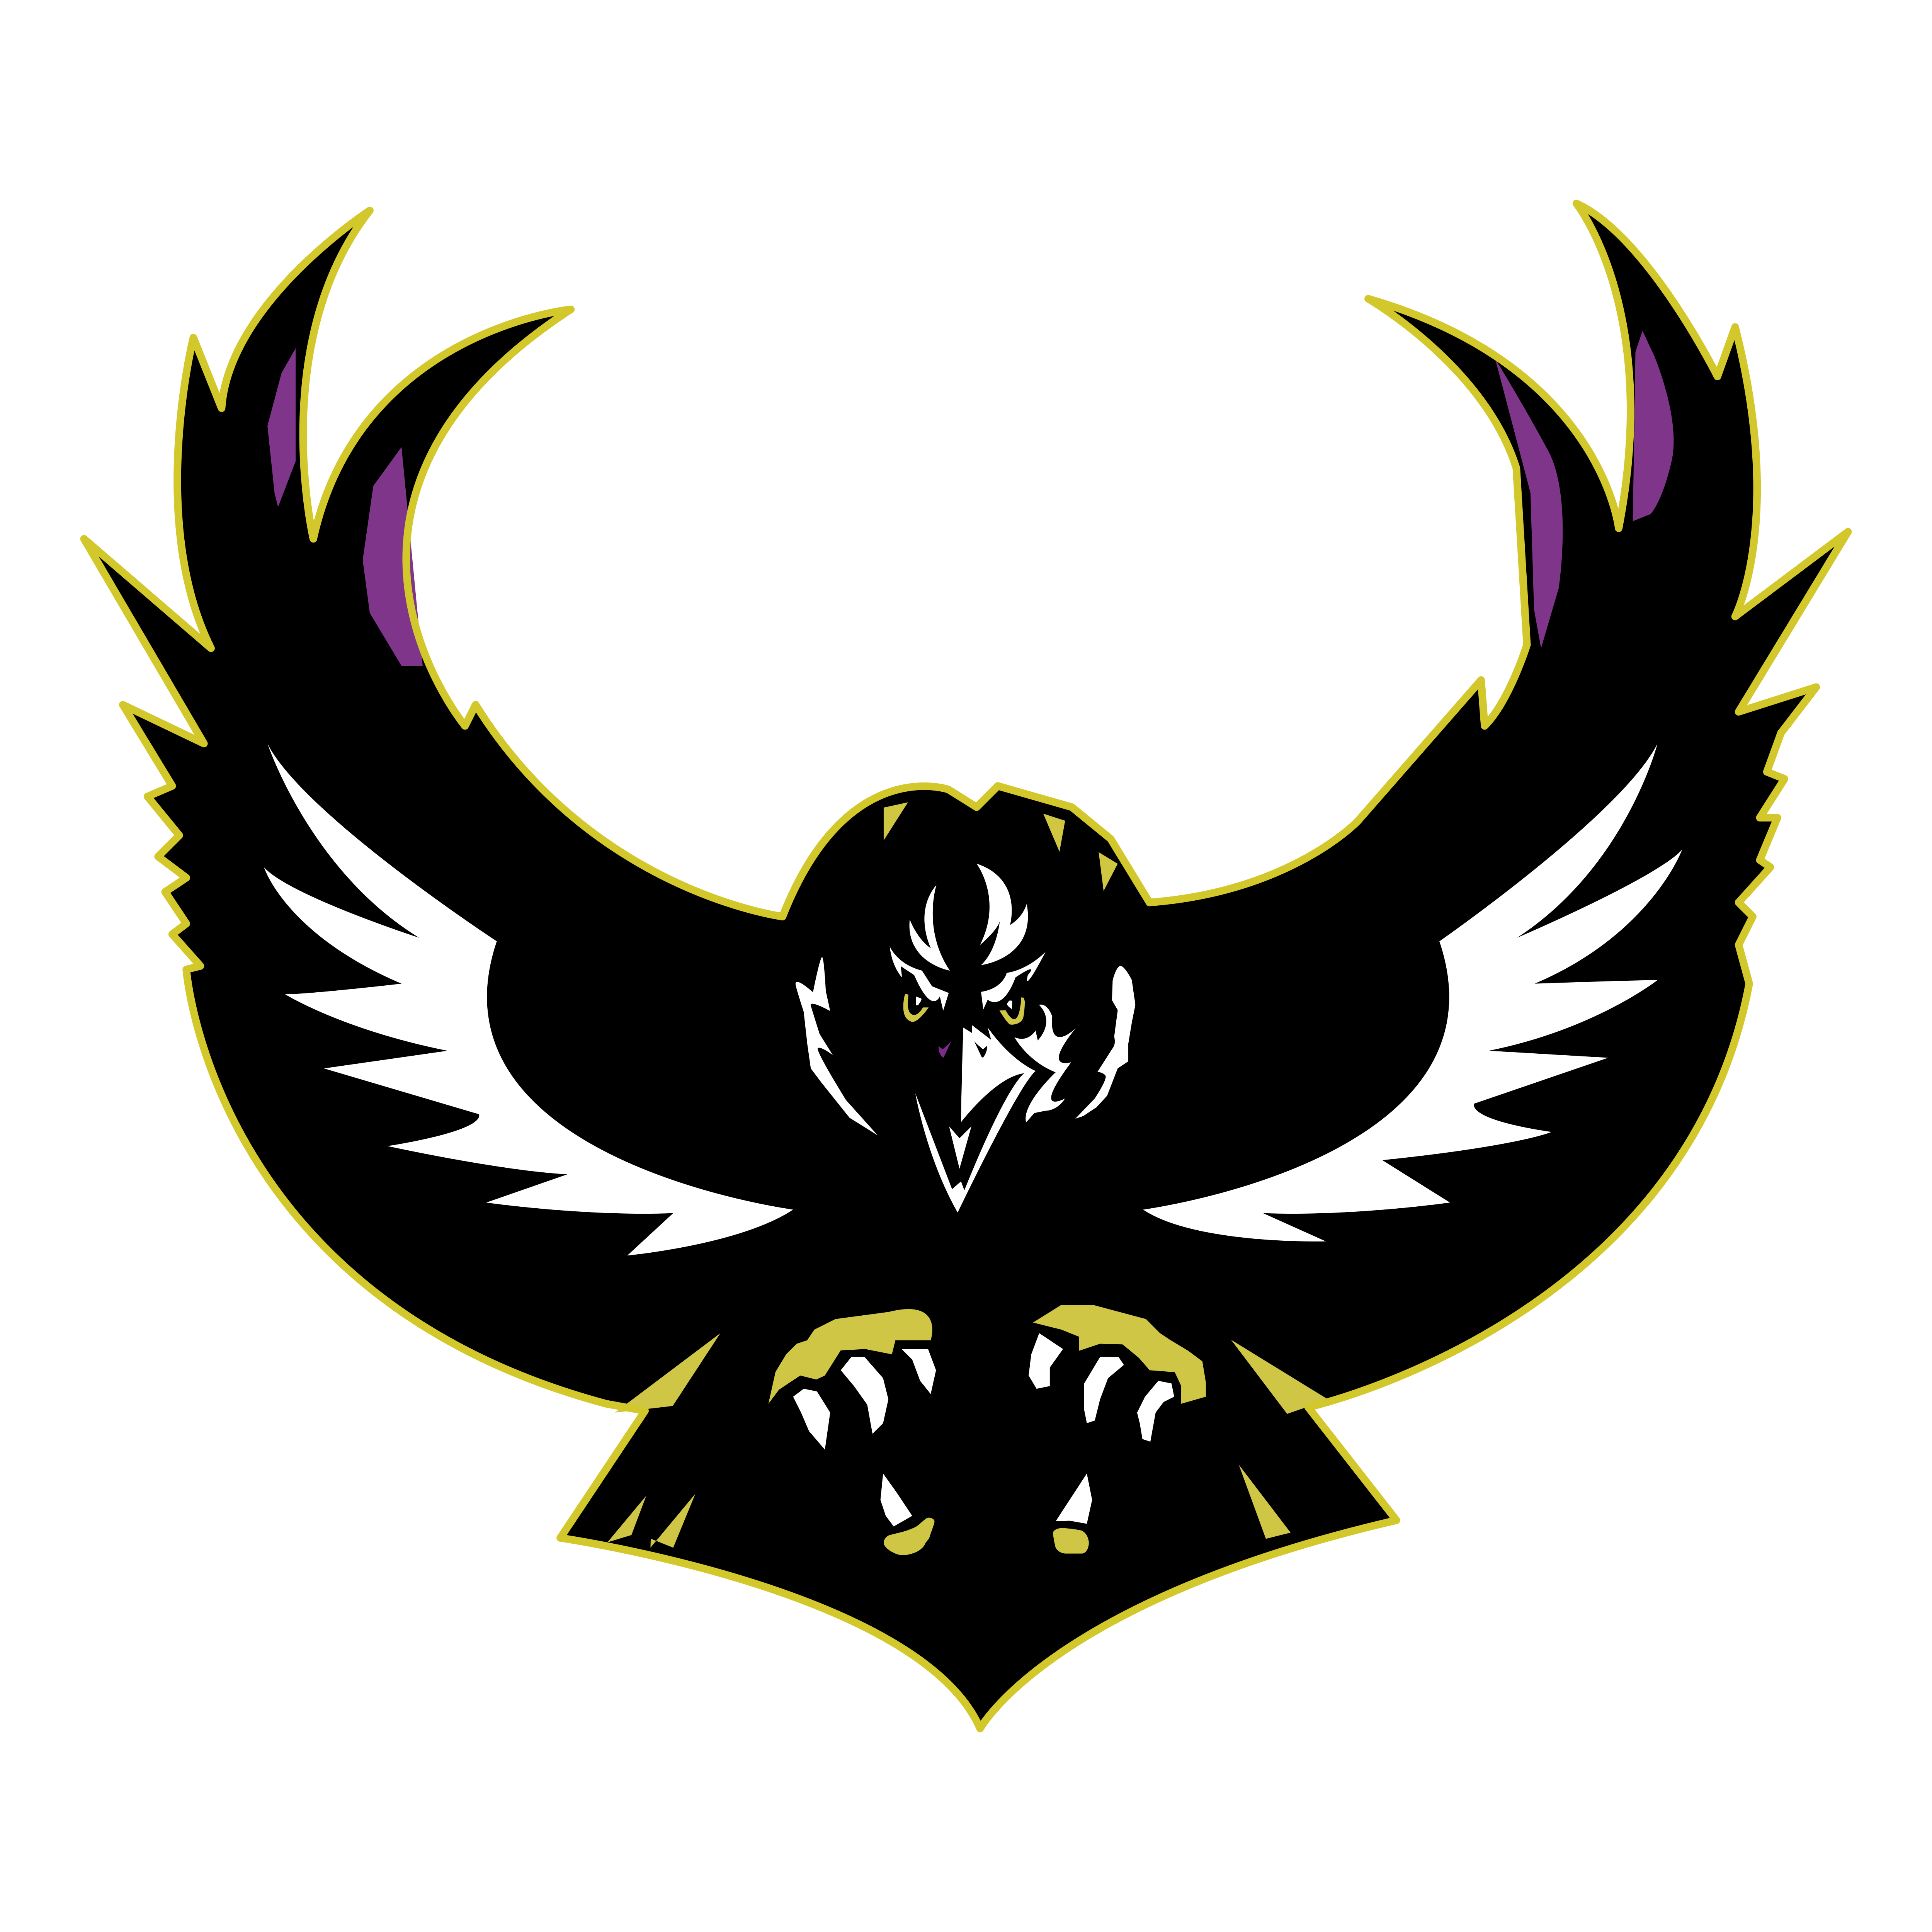 Baltimore Ravens Logos Download